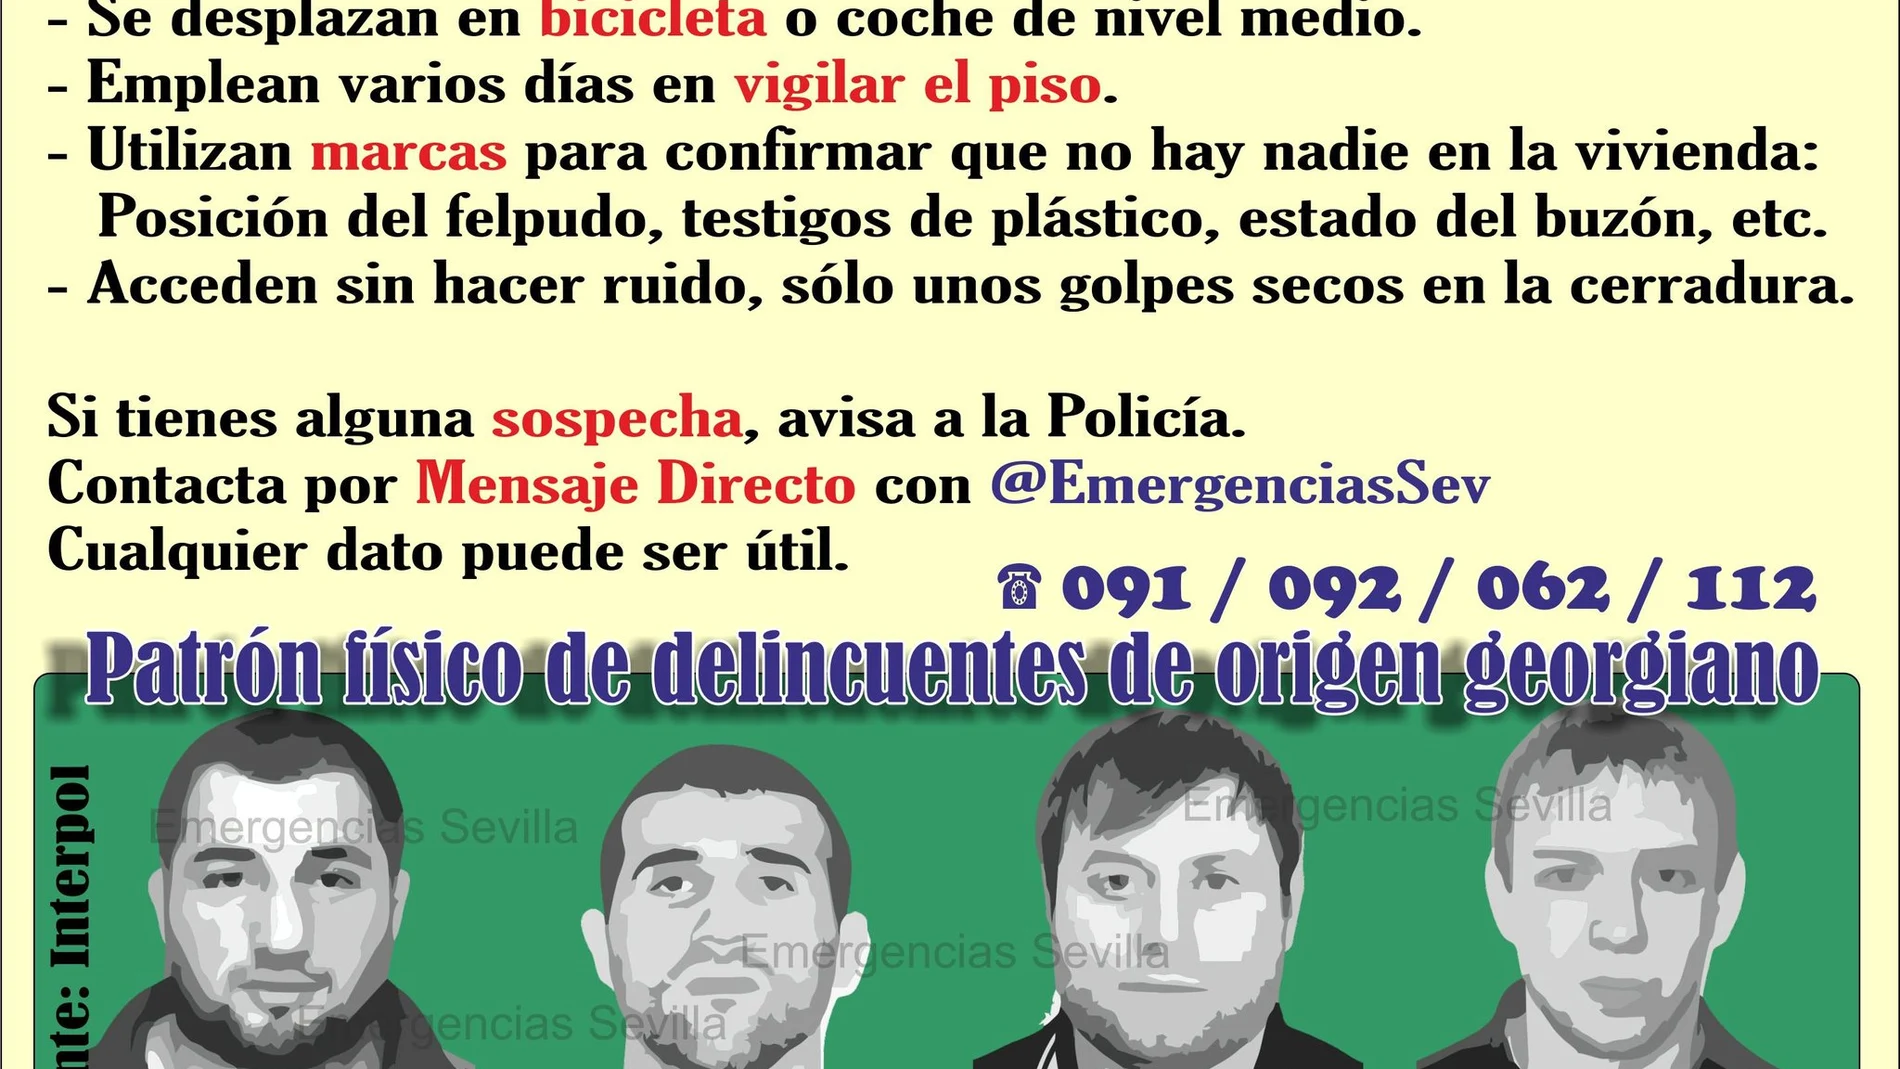 El patrón físico de los ladrones de viviendas de Sevilla